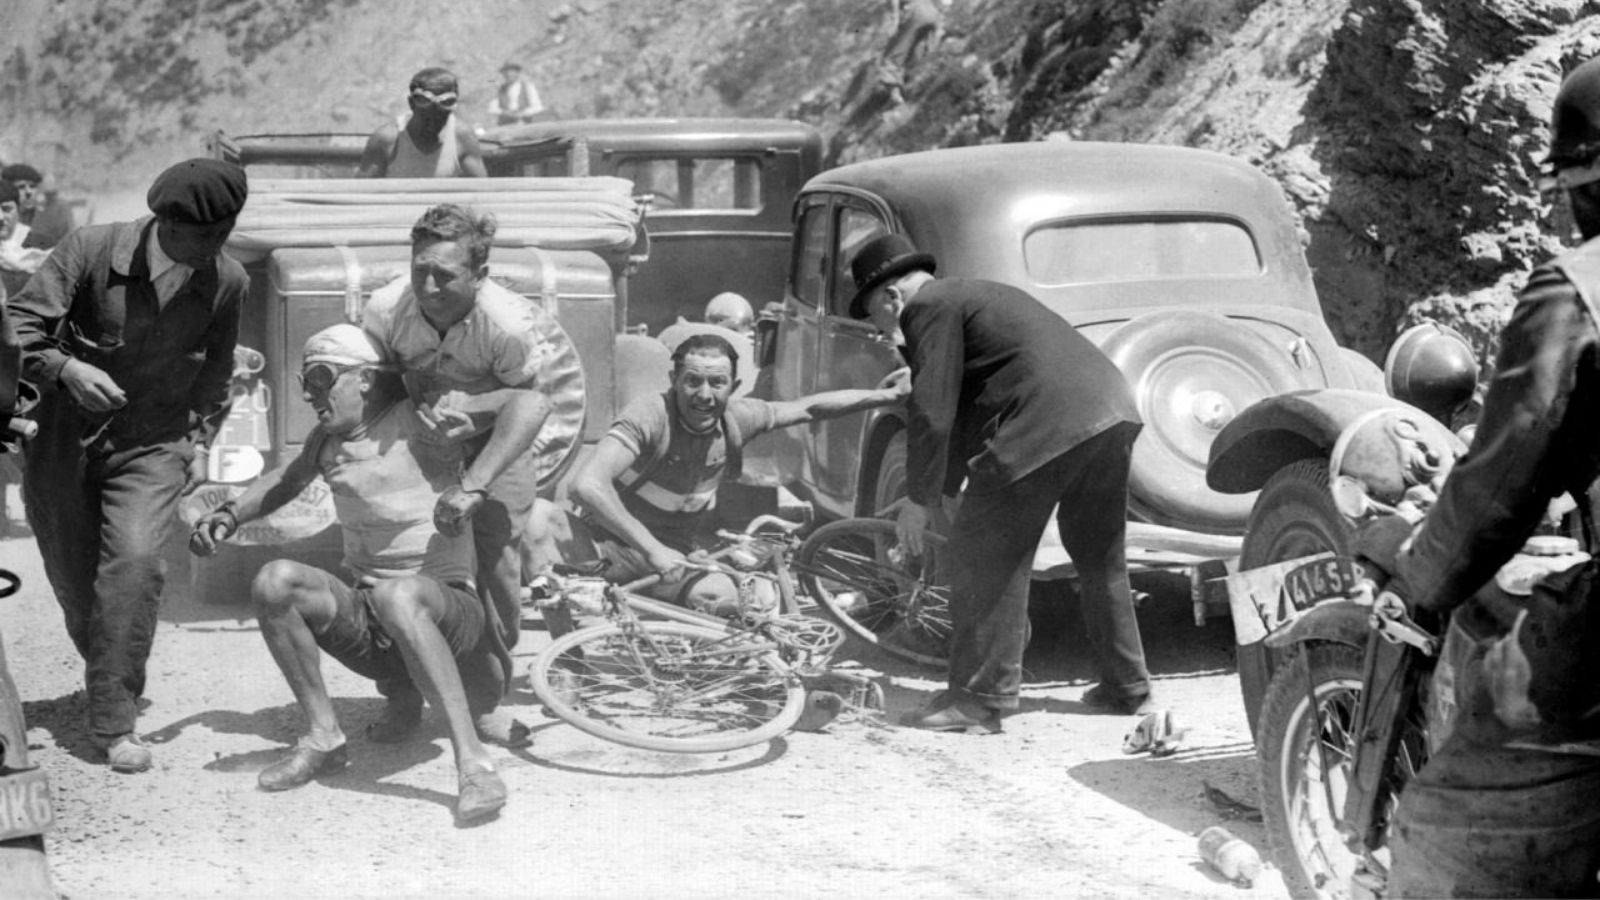 Crash on Tourmalet Tour de France 1937